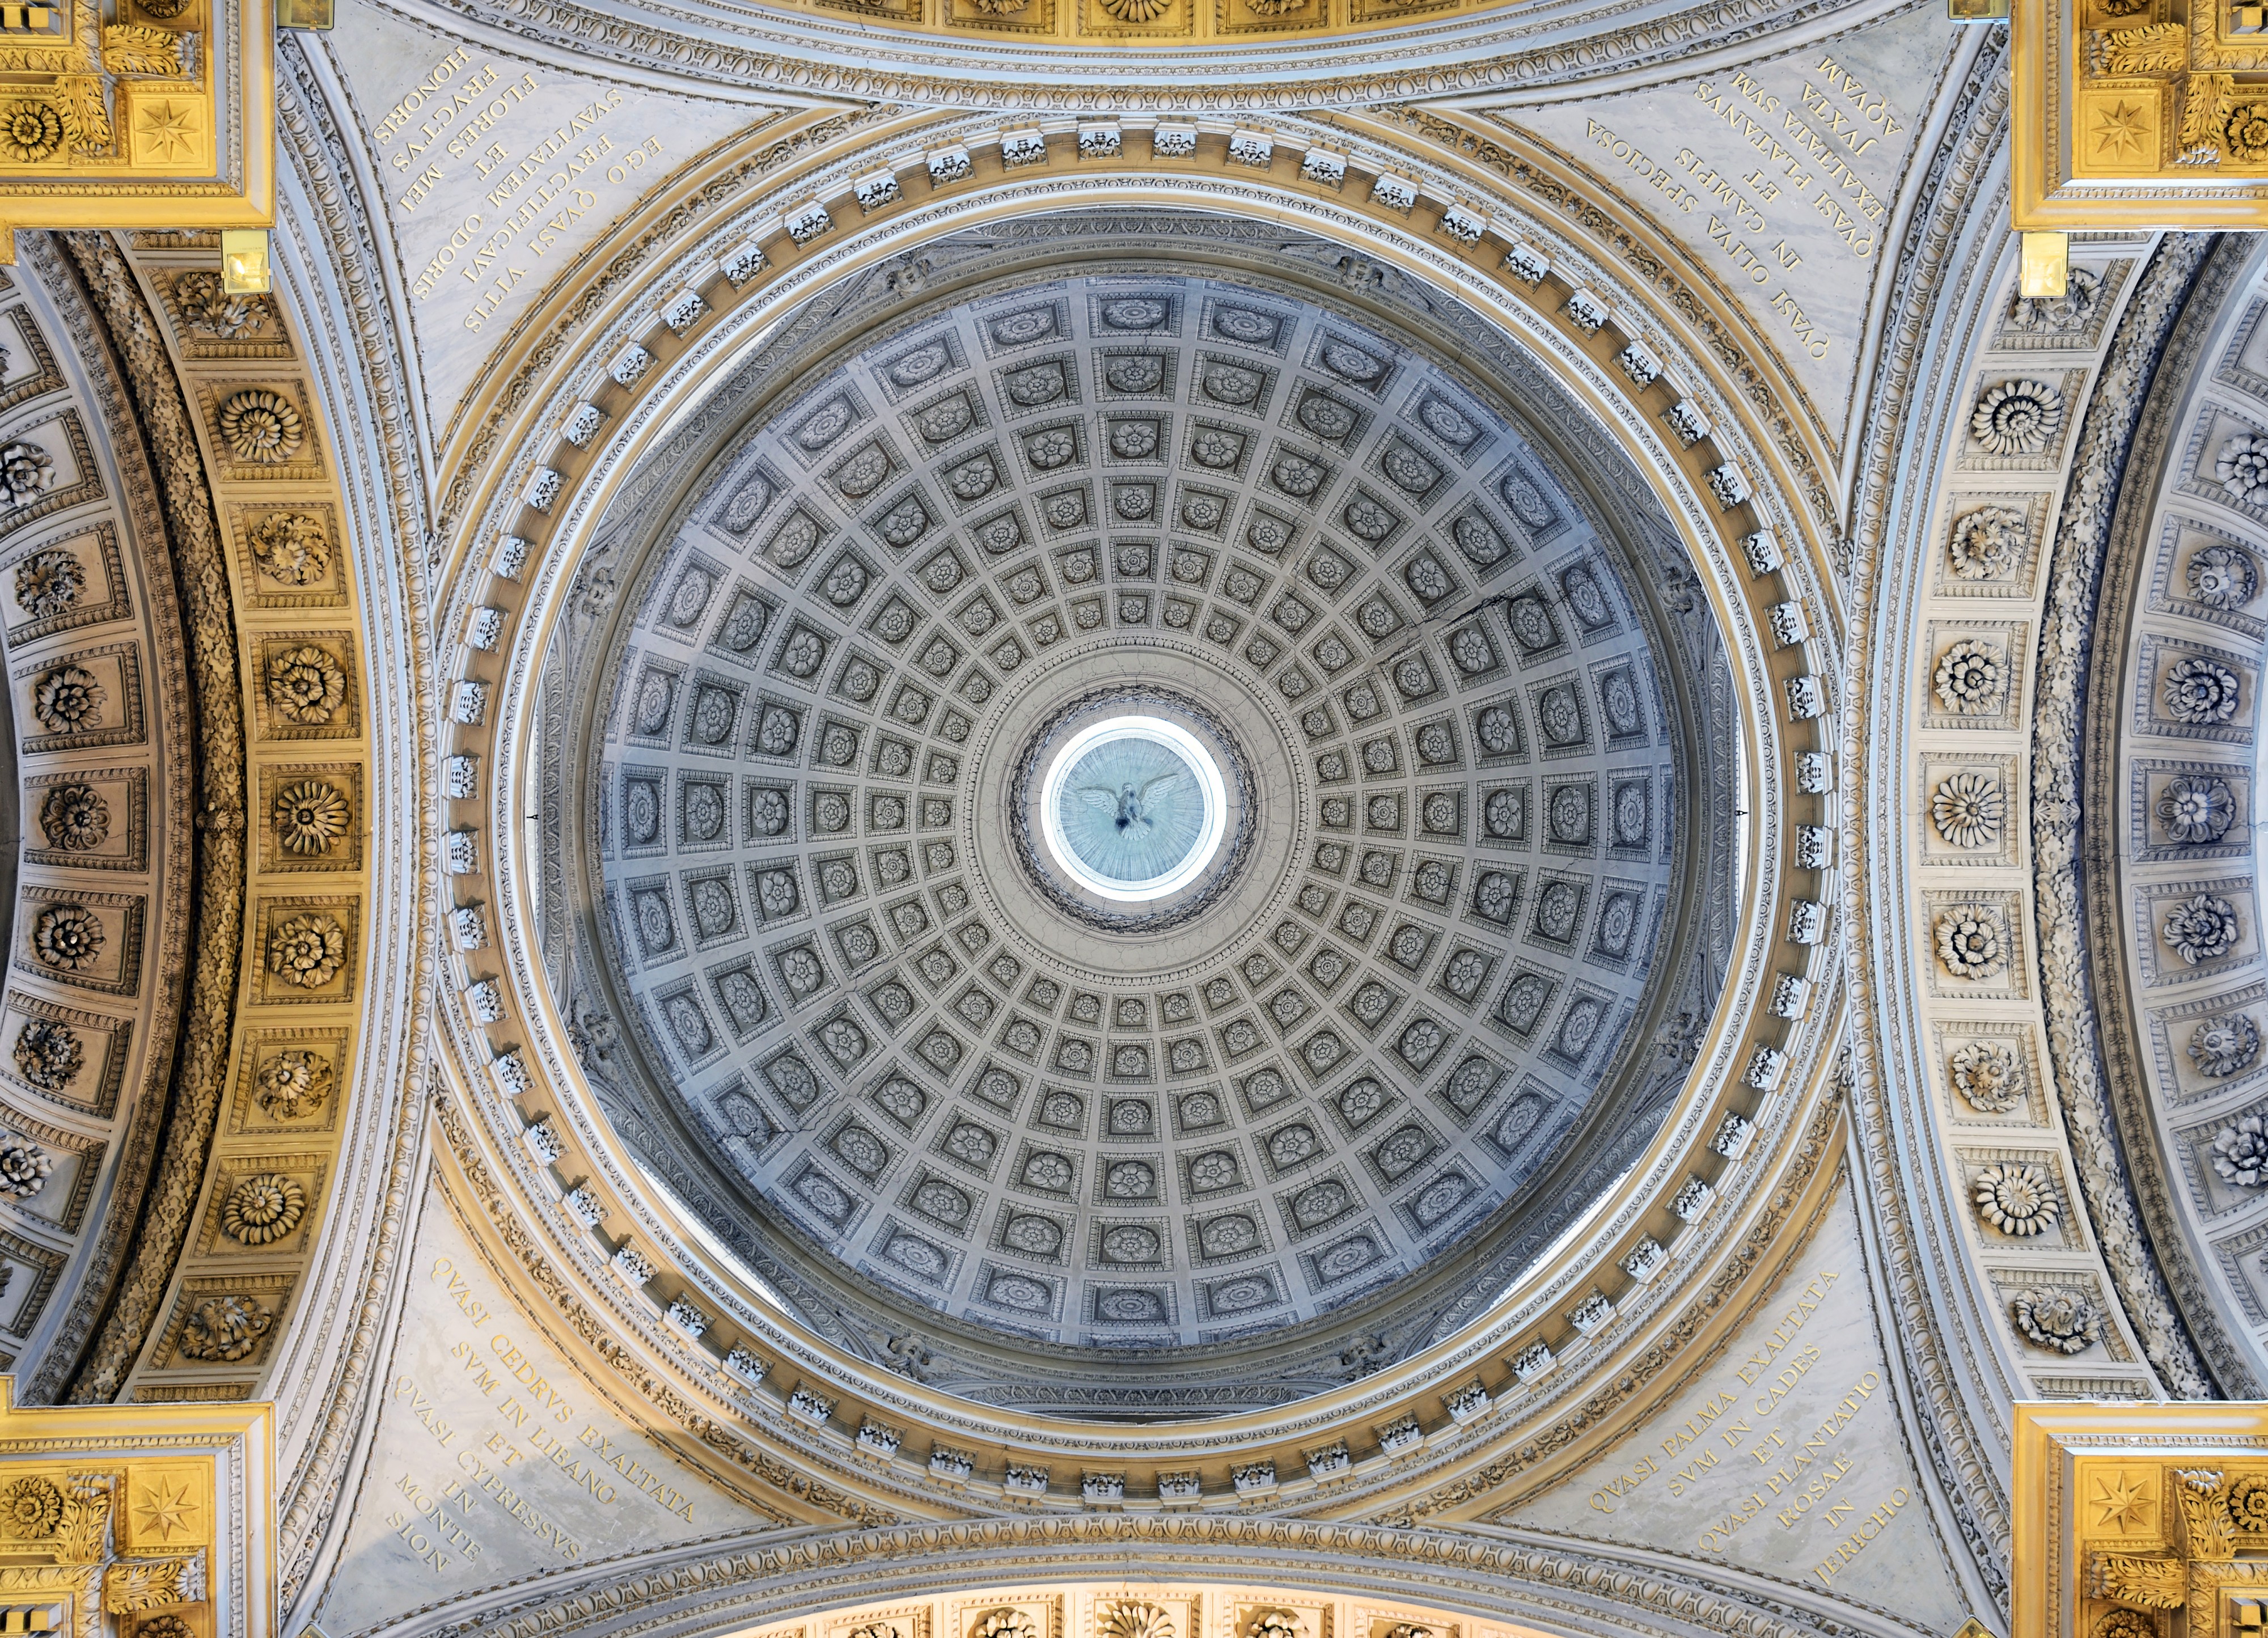 Santa Maria in Campitelli (Rome) - Dome